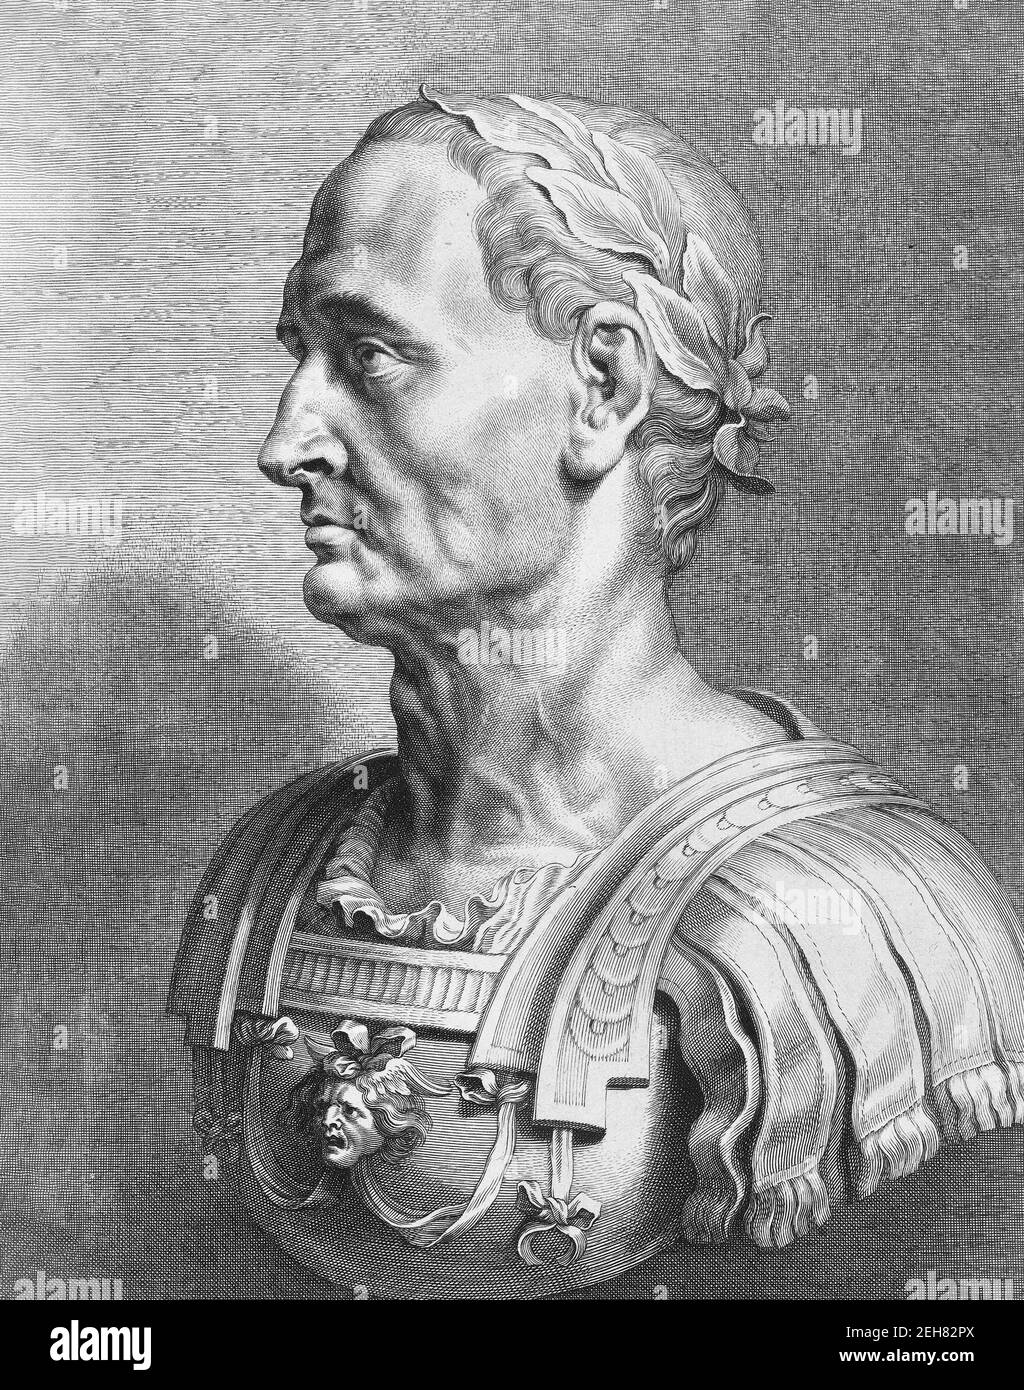 Julius Caesar. Porträt des römischen Diktators Julius Caesar (100 v. Chr. - 44 v. Chr.), 17th. Jh. Gravur einer Marmorbüste Stockfoto